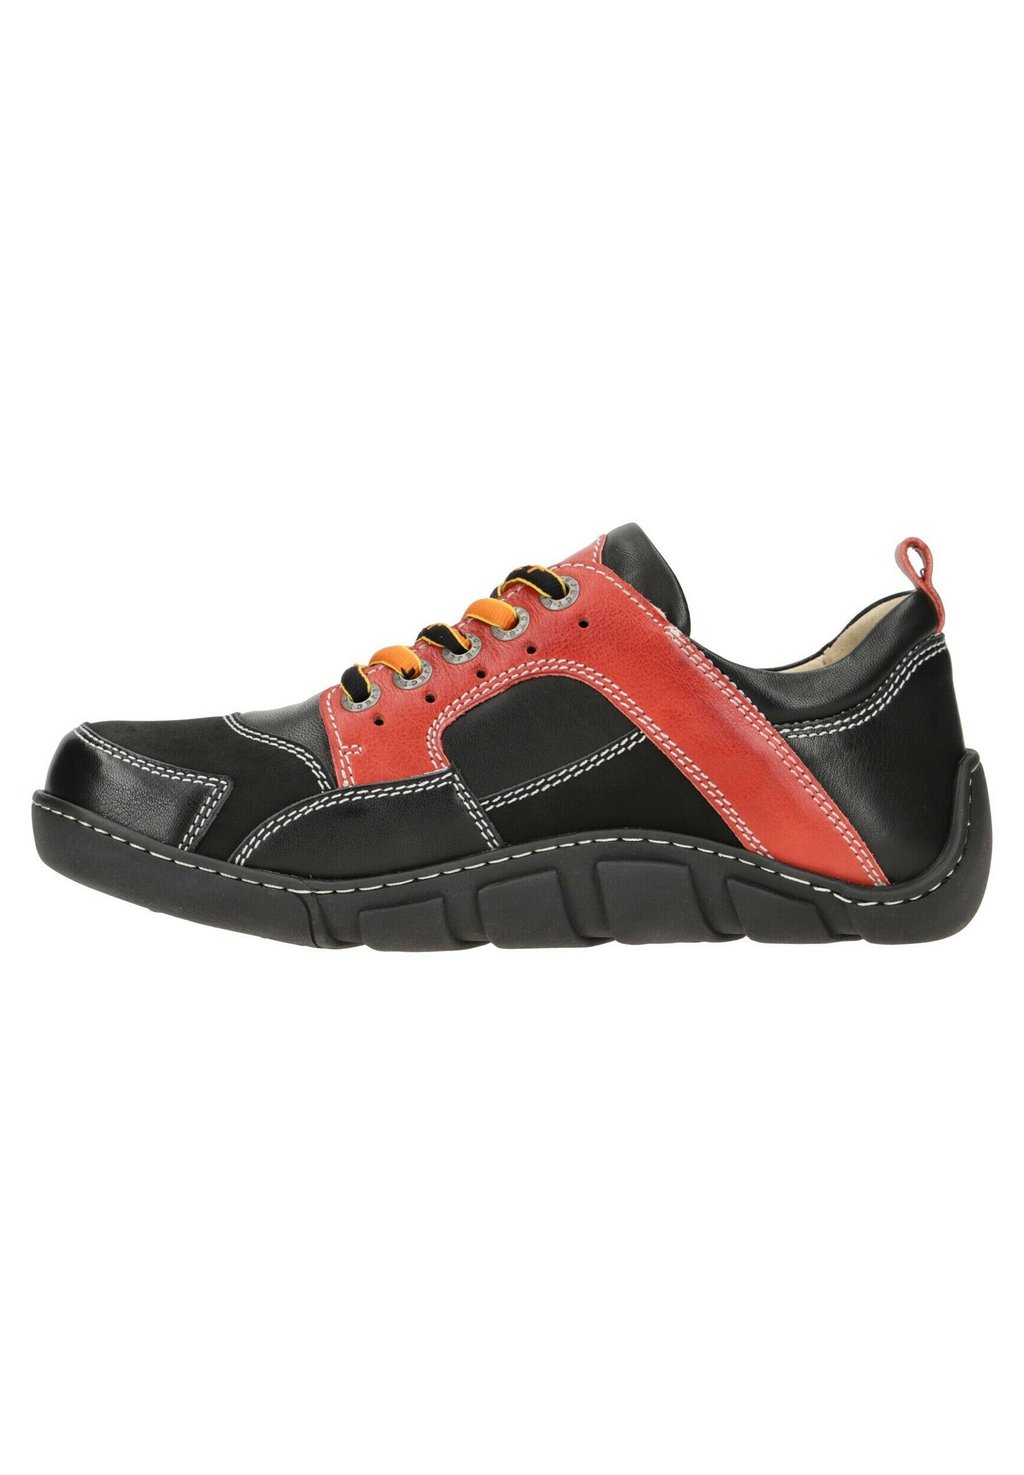 Спортивные туфли на шнуровке FLIGHT Eject, цвет black / red